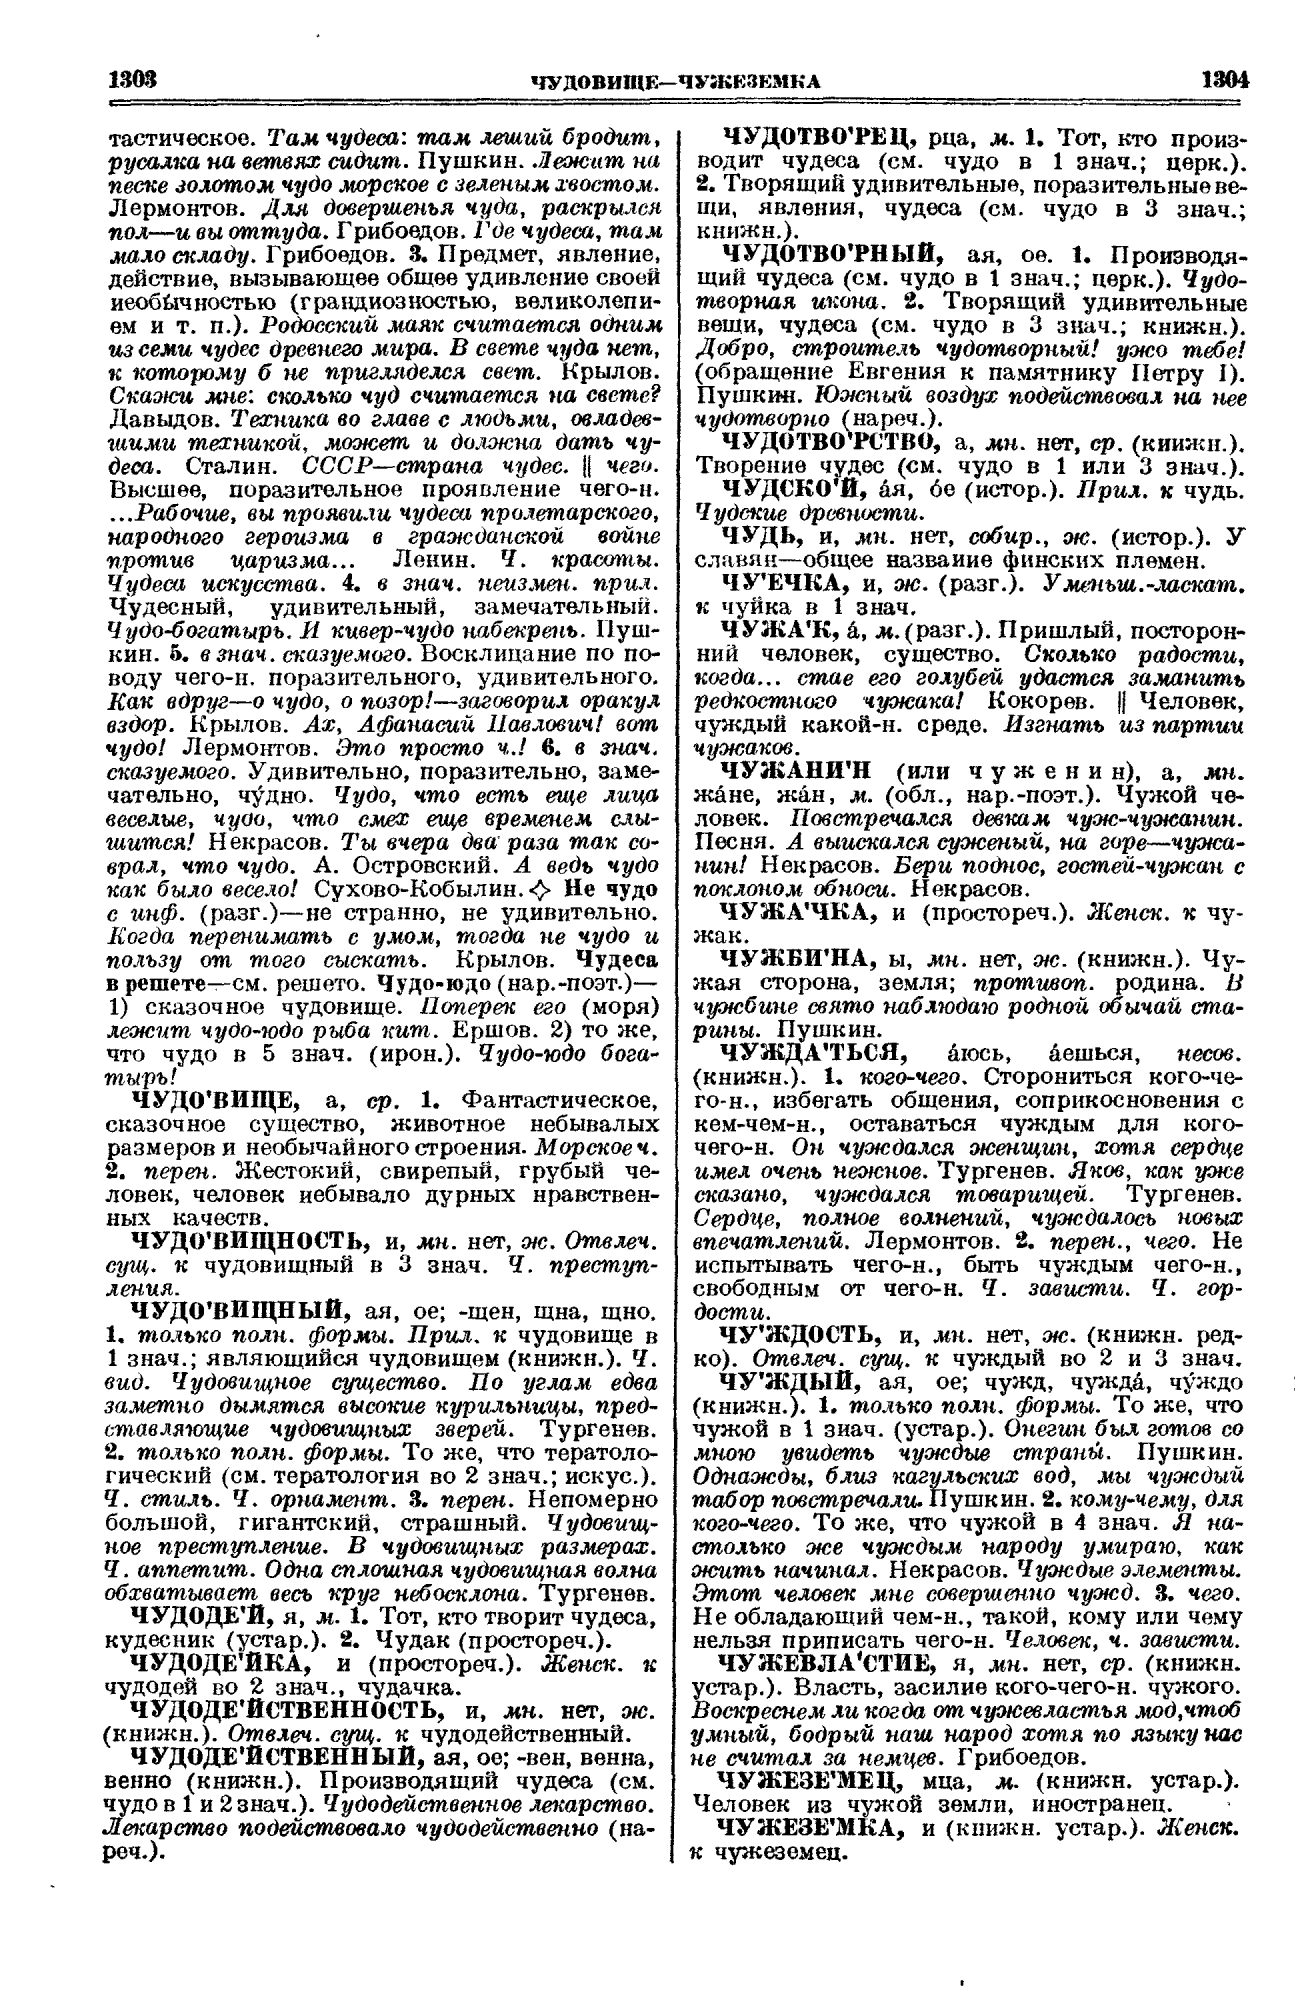 Фотокопия pdf / скан страницы 652 толкового словаря Ушакова (том 1)